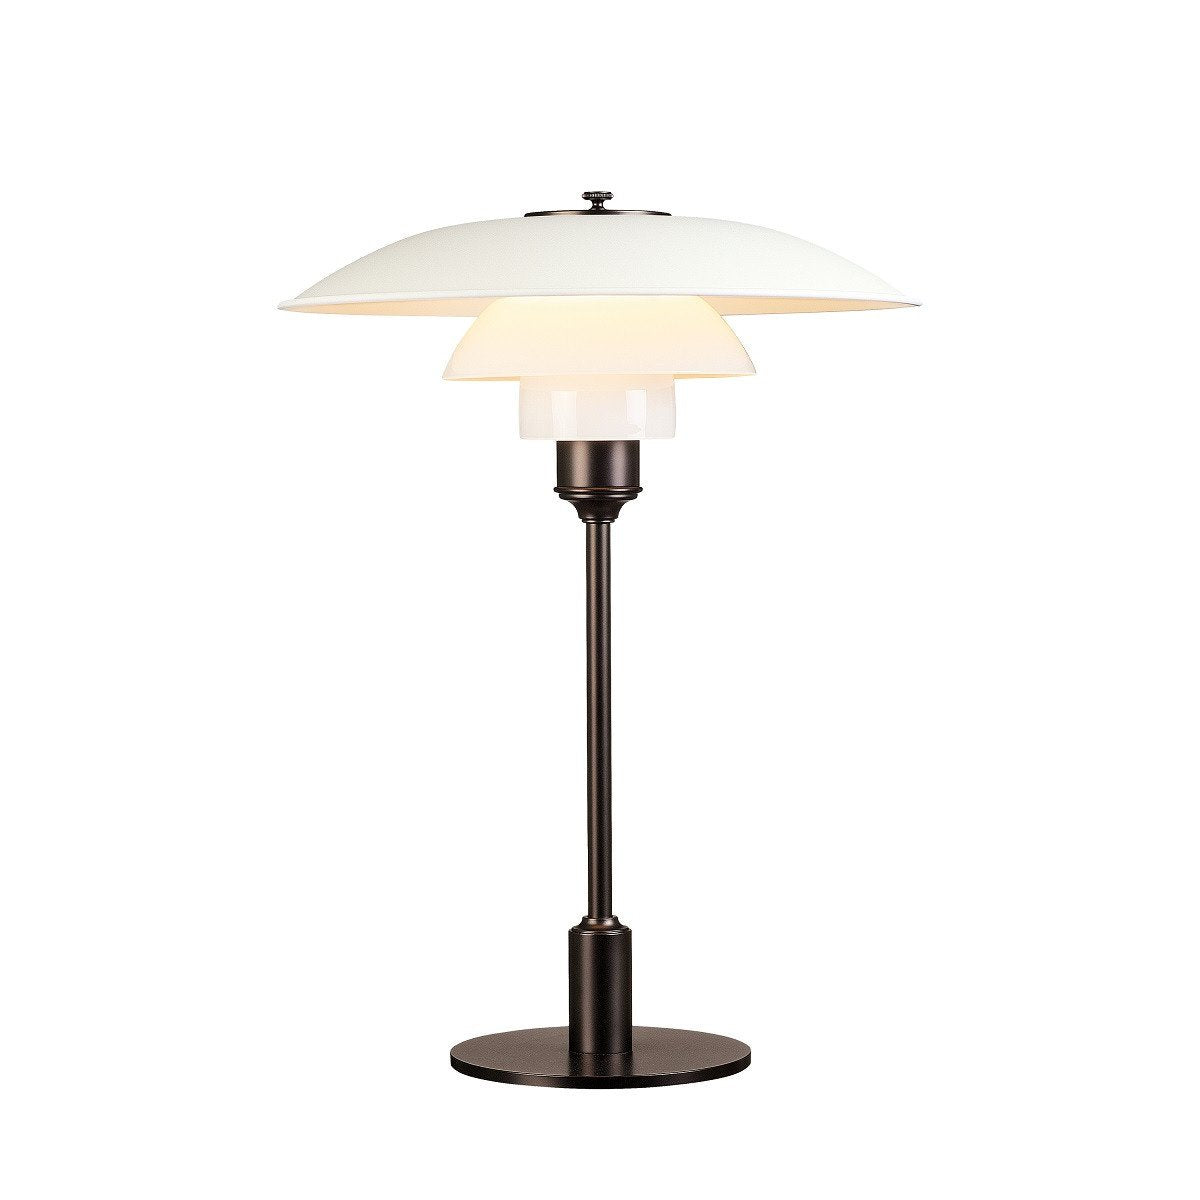 Louis Poulsen Ph 3 1/2 2 1/2 Table Lamp, White